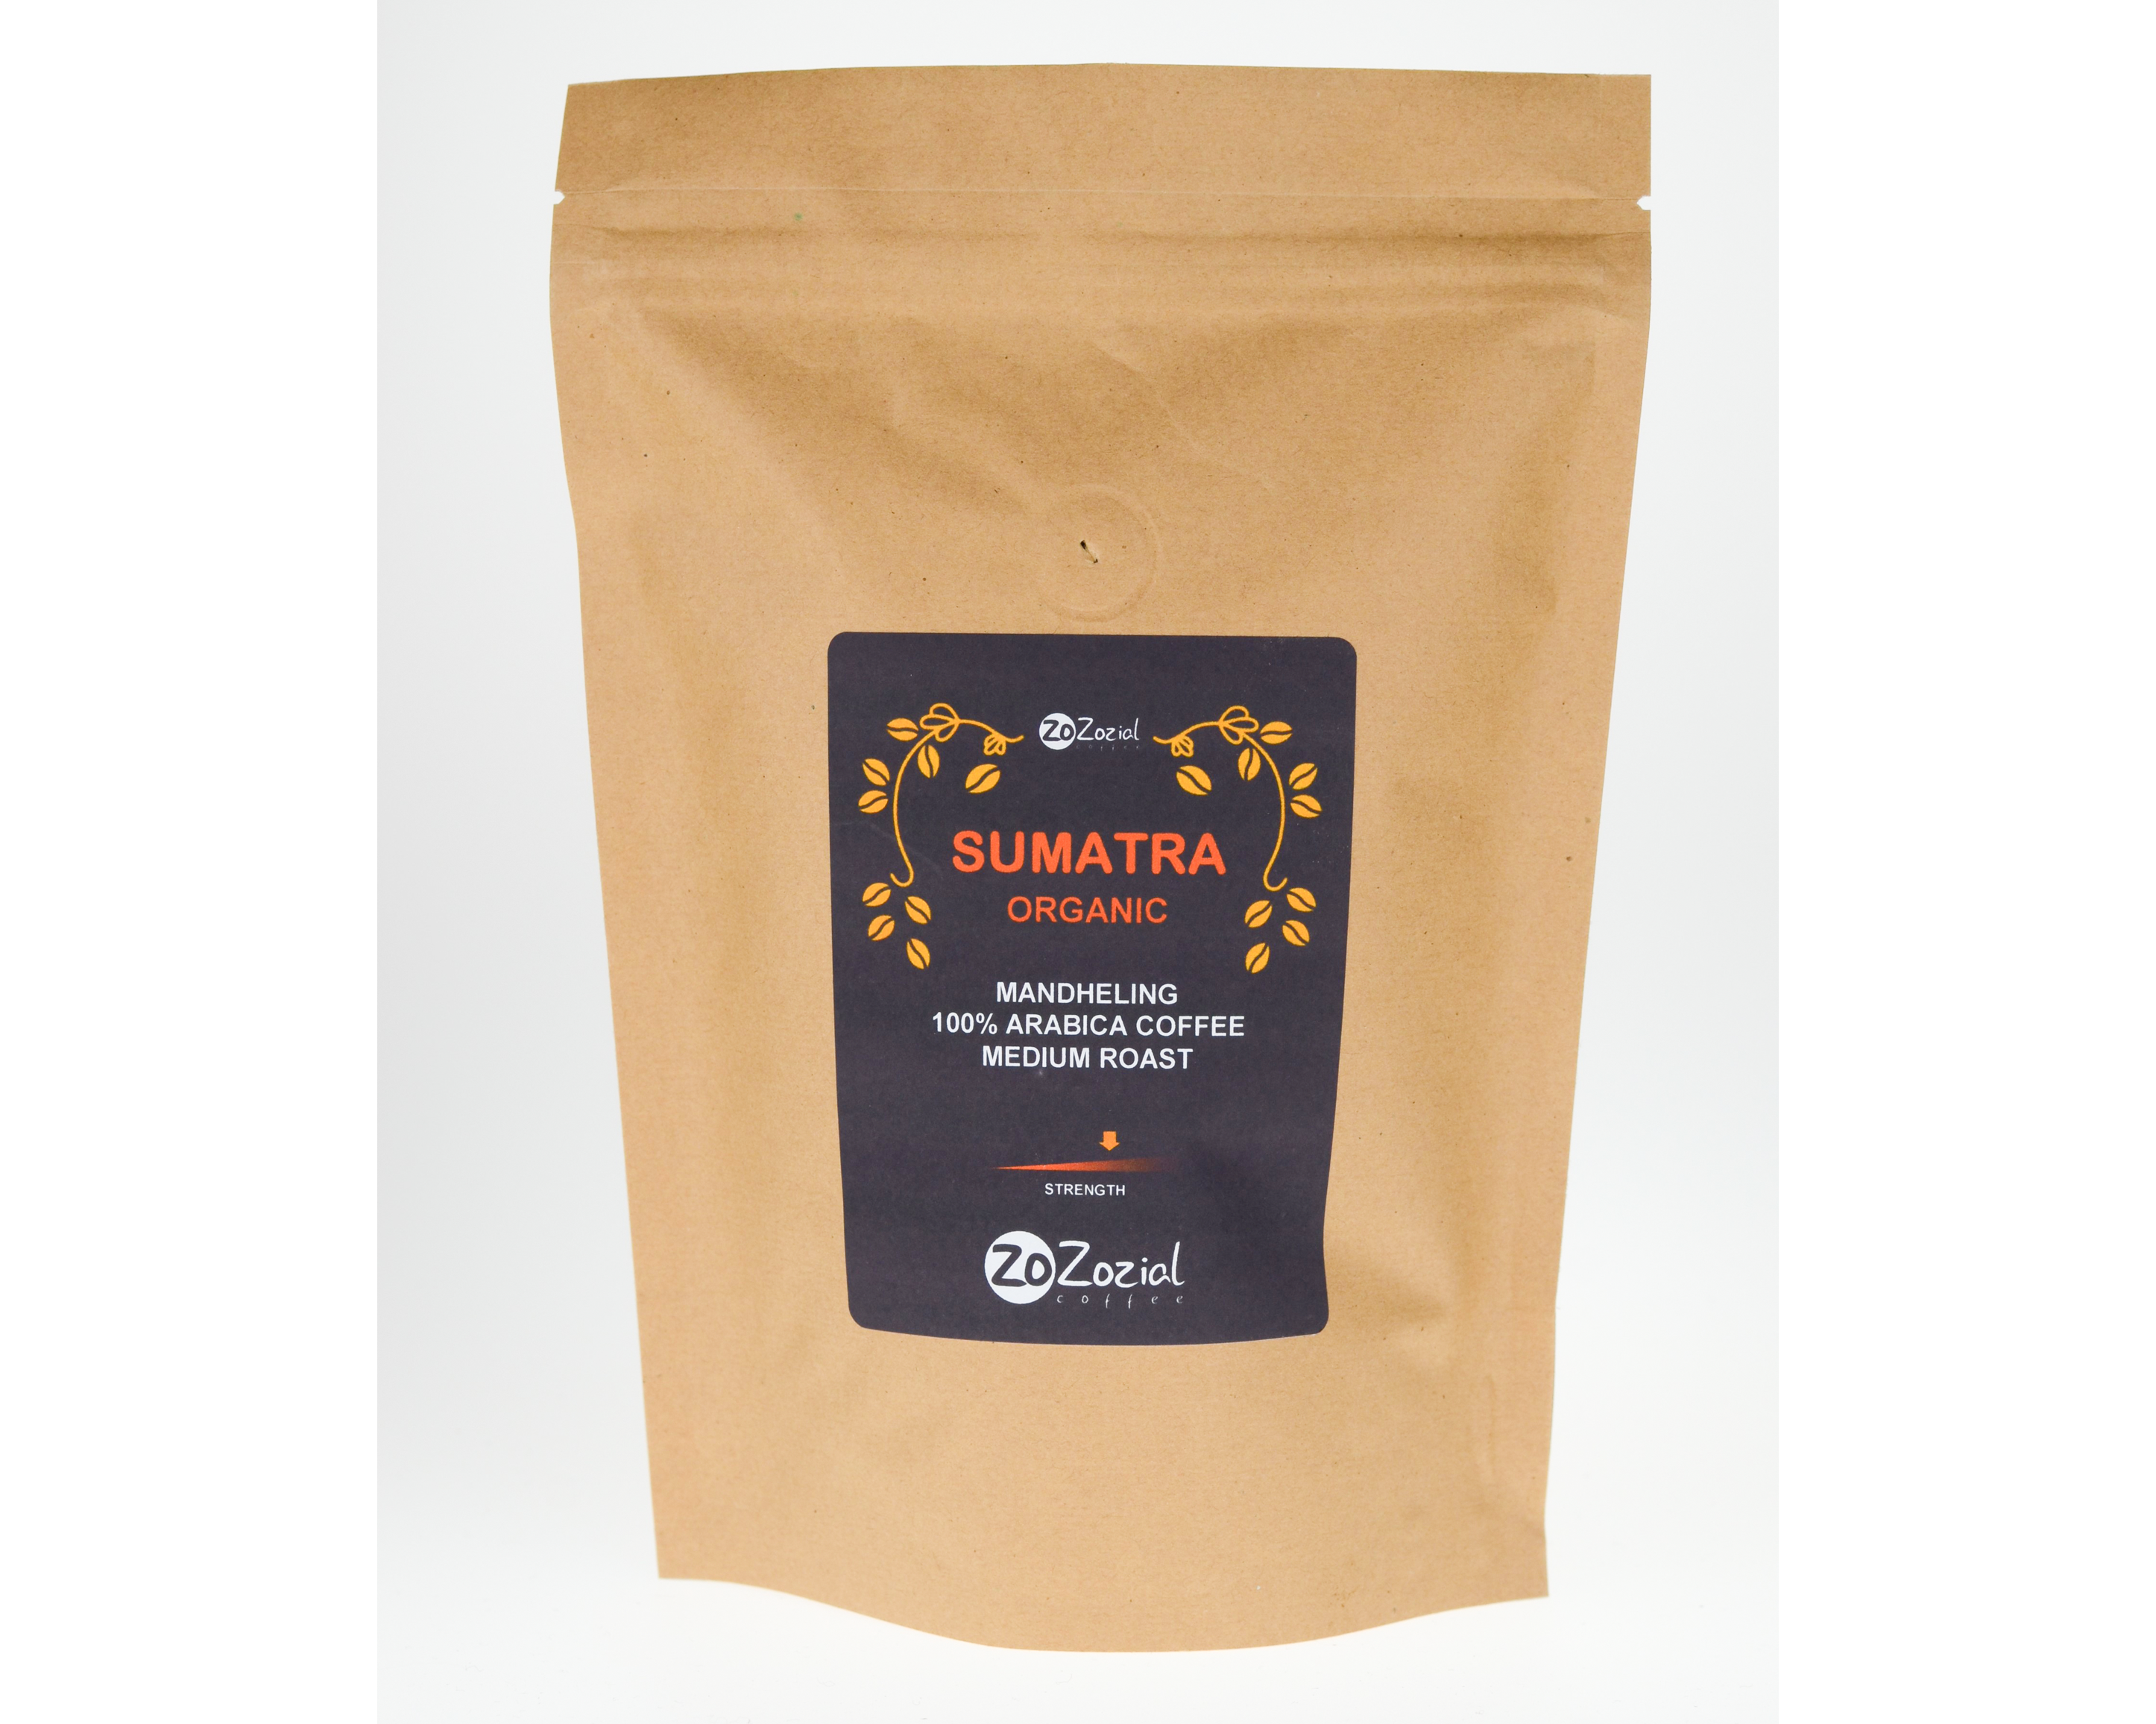 sumatra mandheling roast profile